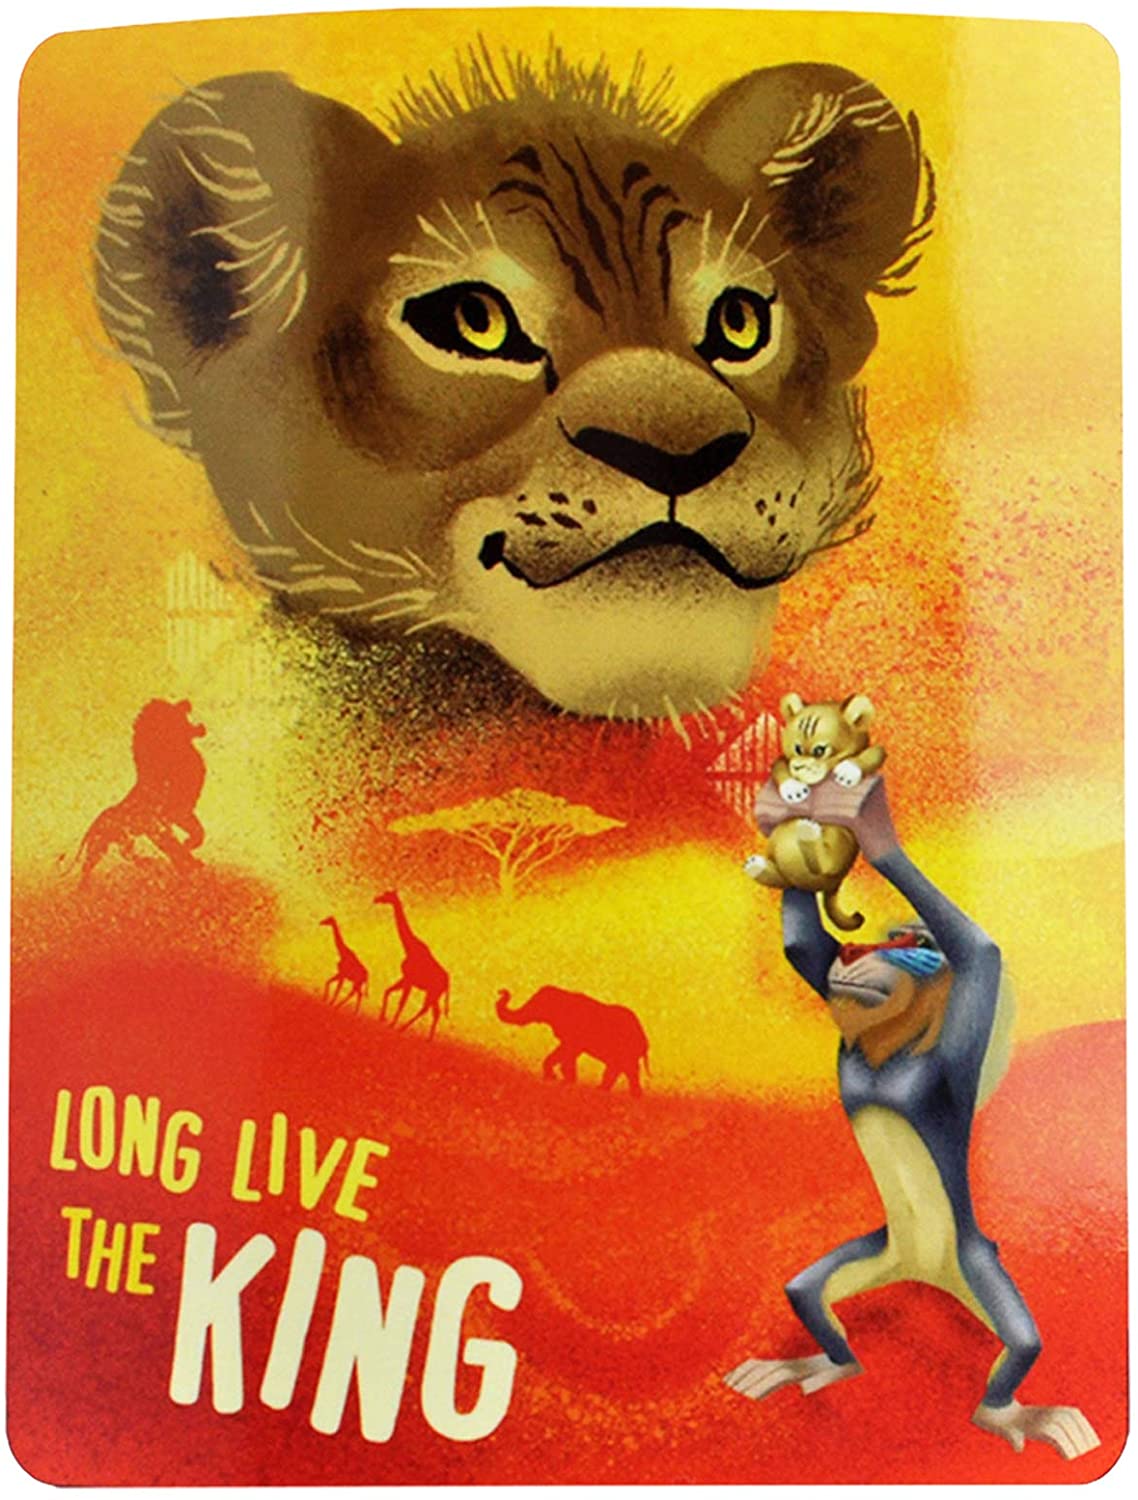 The Northwest Company LION KING   FUTURE KING, Orange